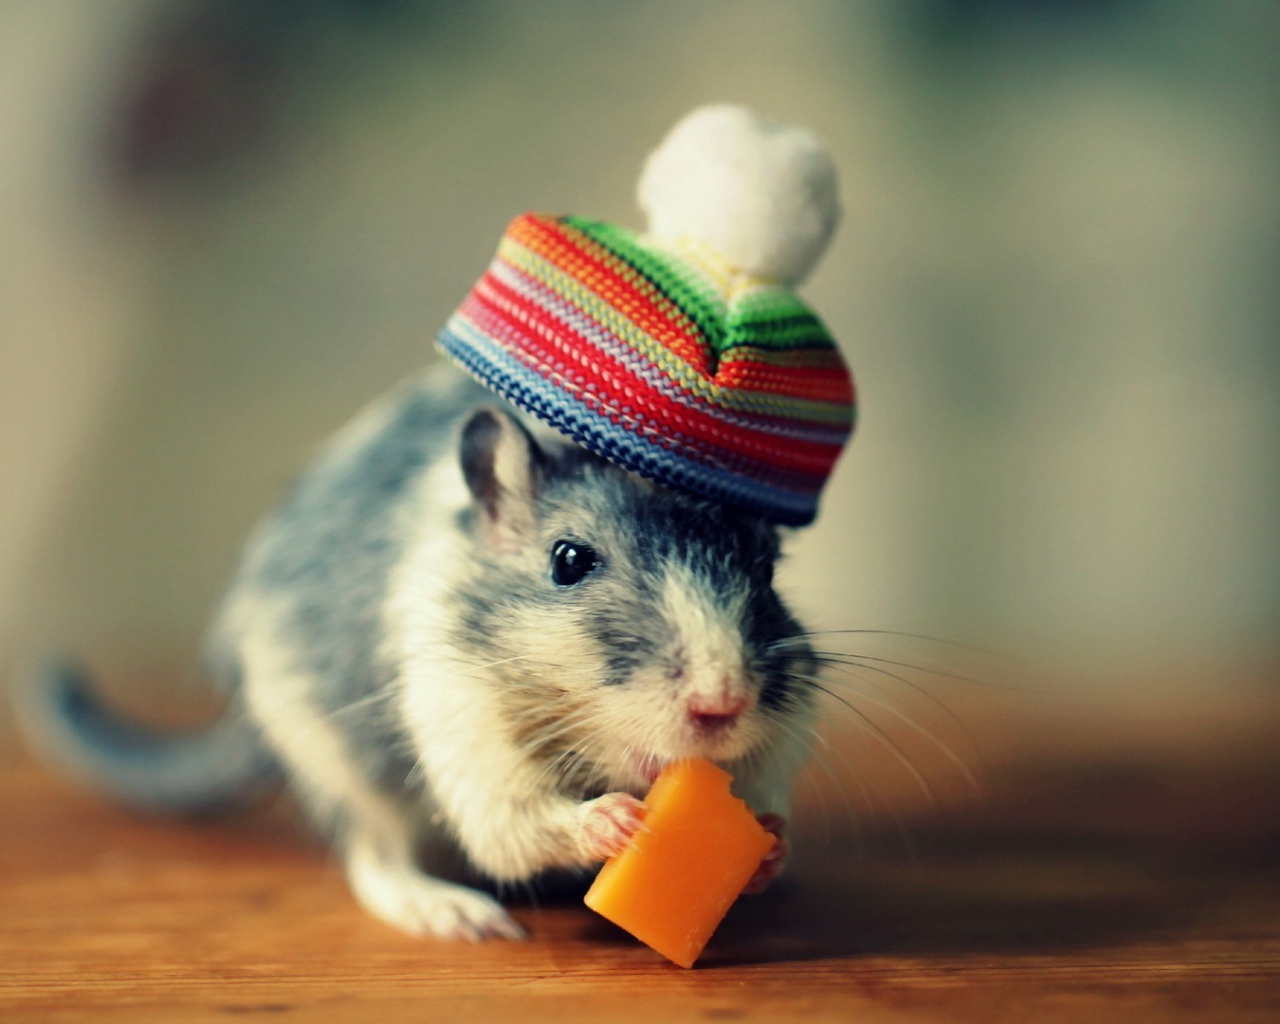 Мышка в шапке кушает сыр